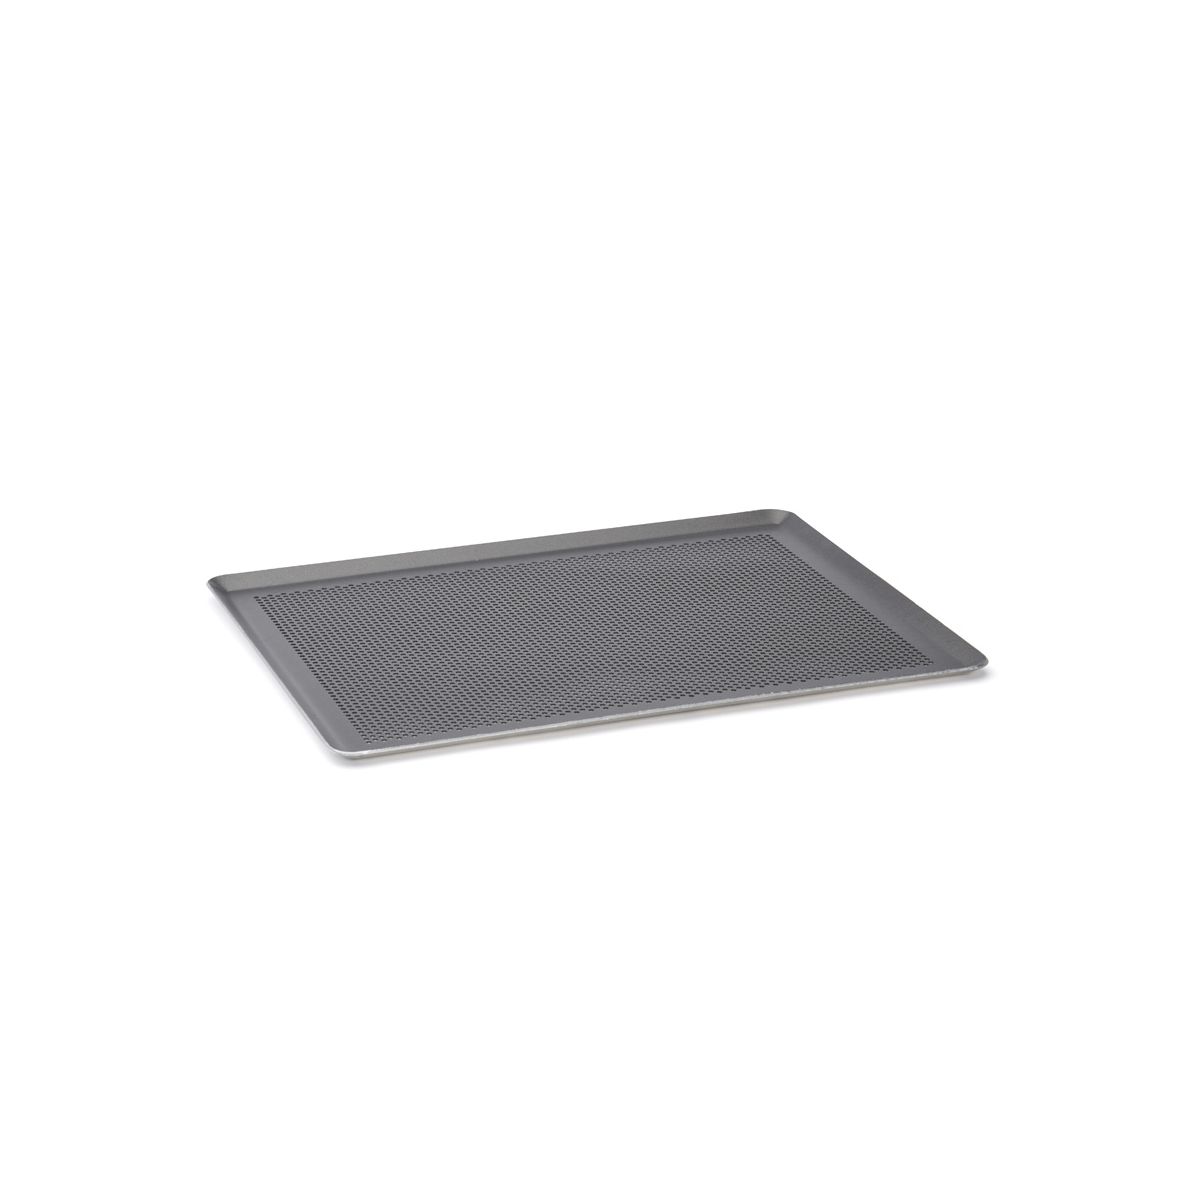 Plaque à pâtisserie micro-perforée professionnelle en aluminium 40 cm 